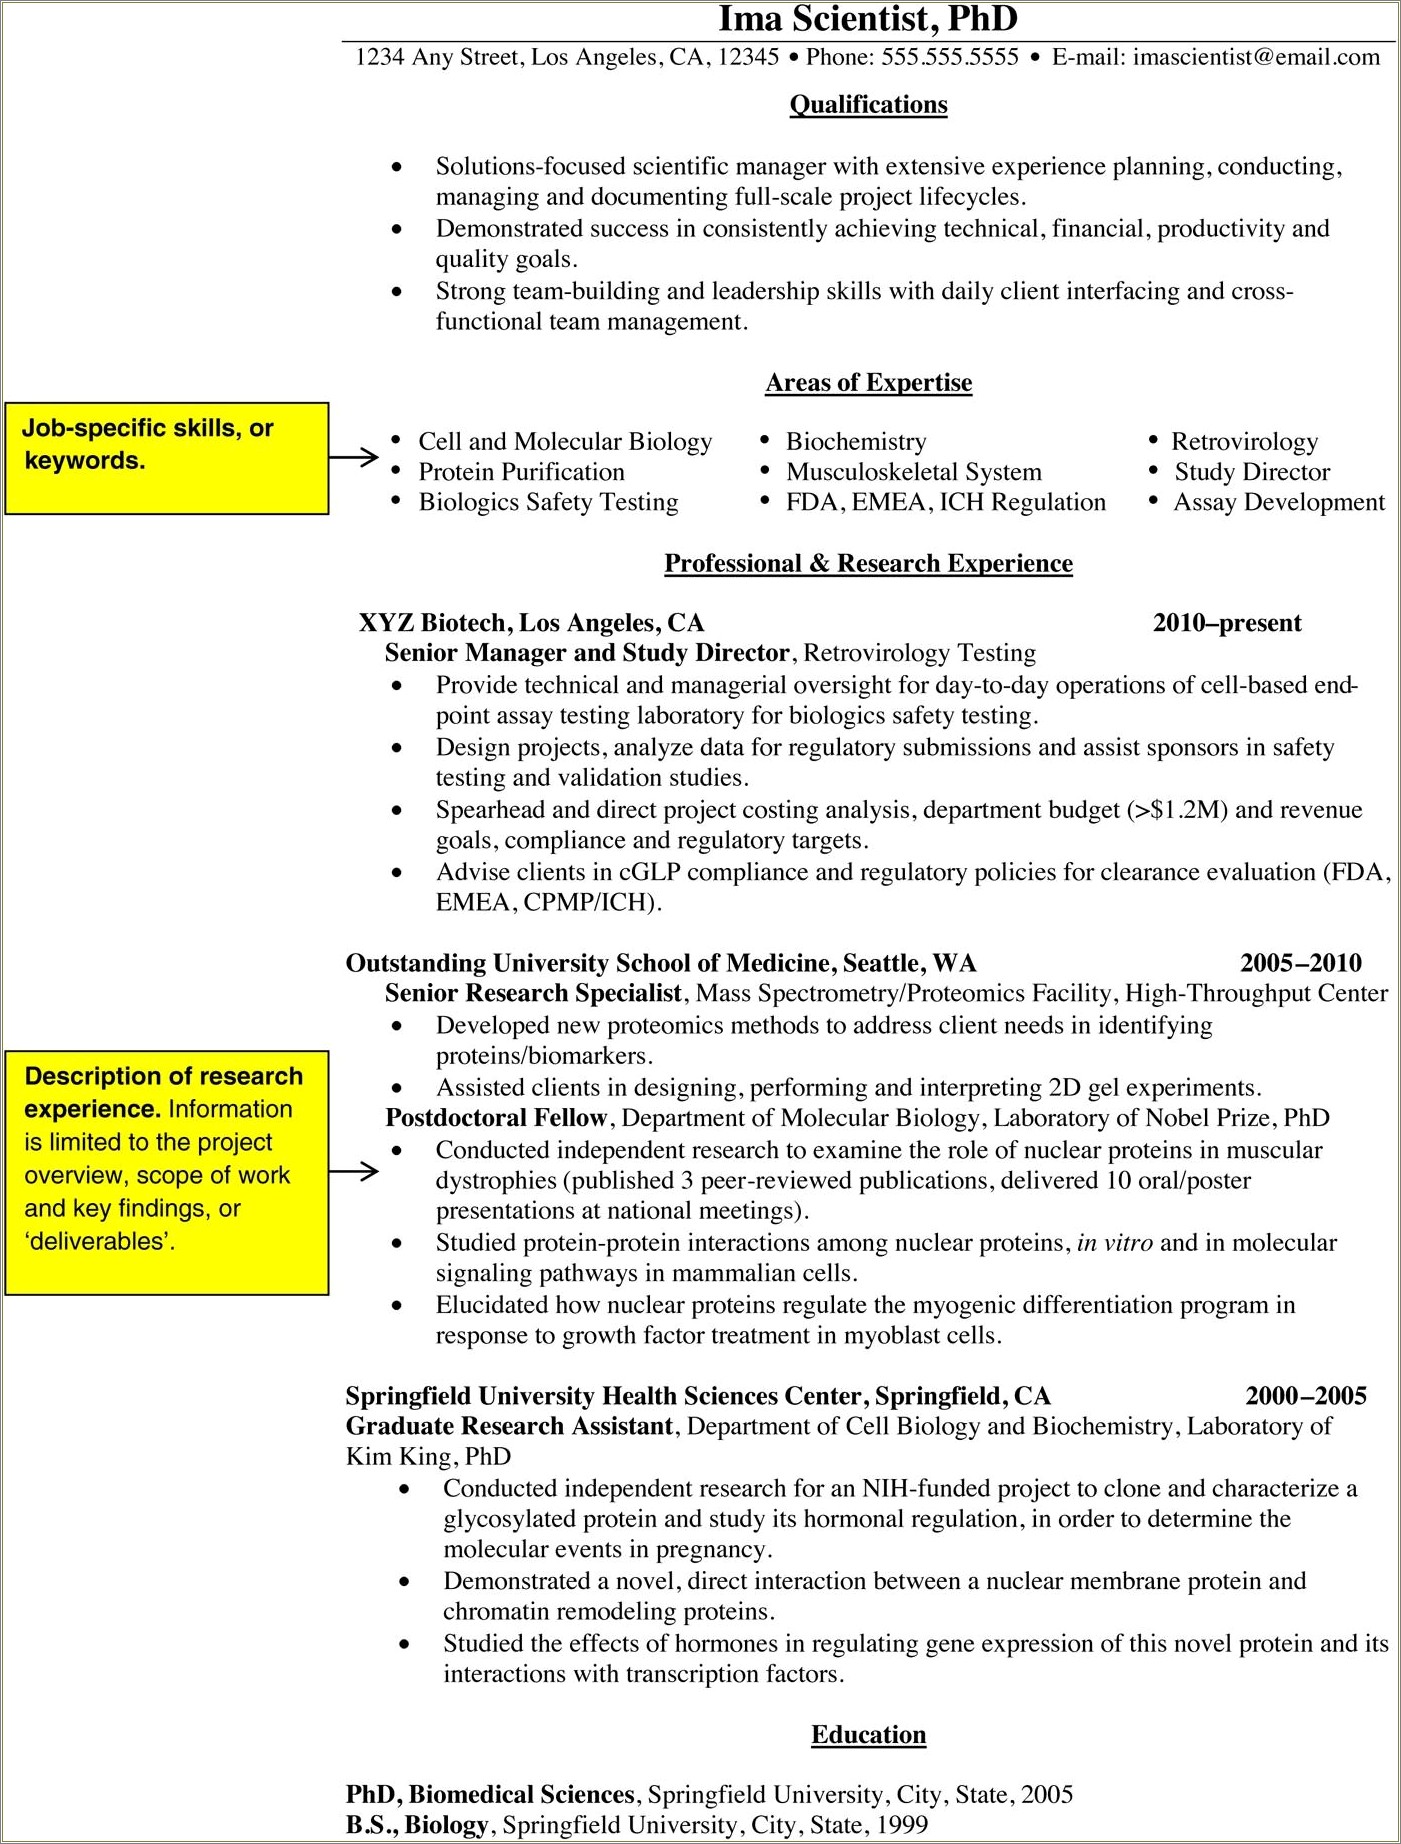 Resume Skills For Fda Regulated Environment Jobs